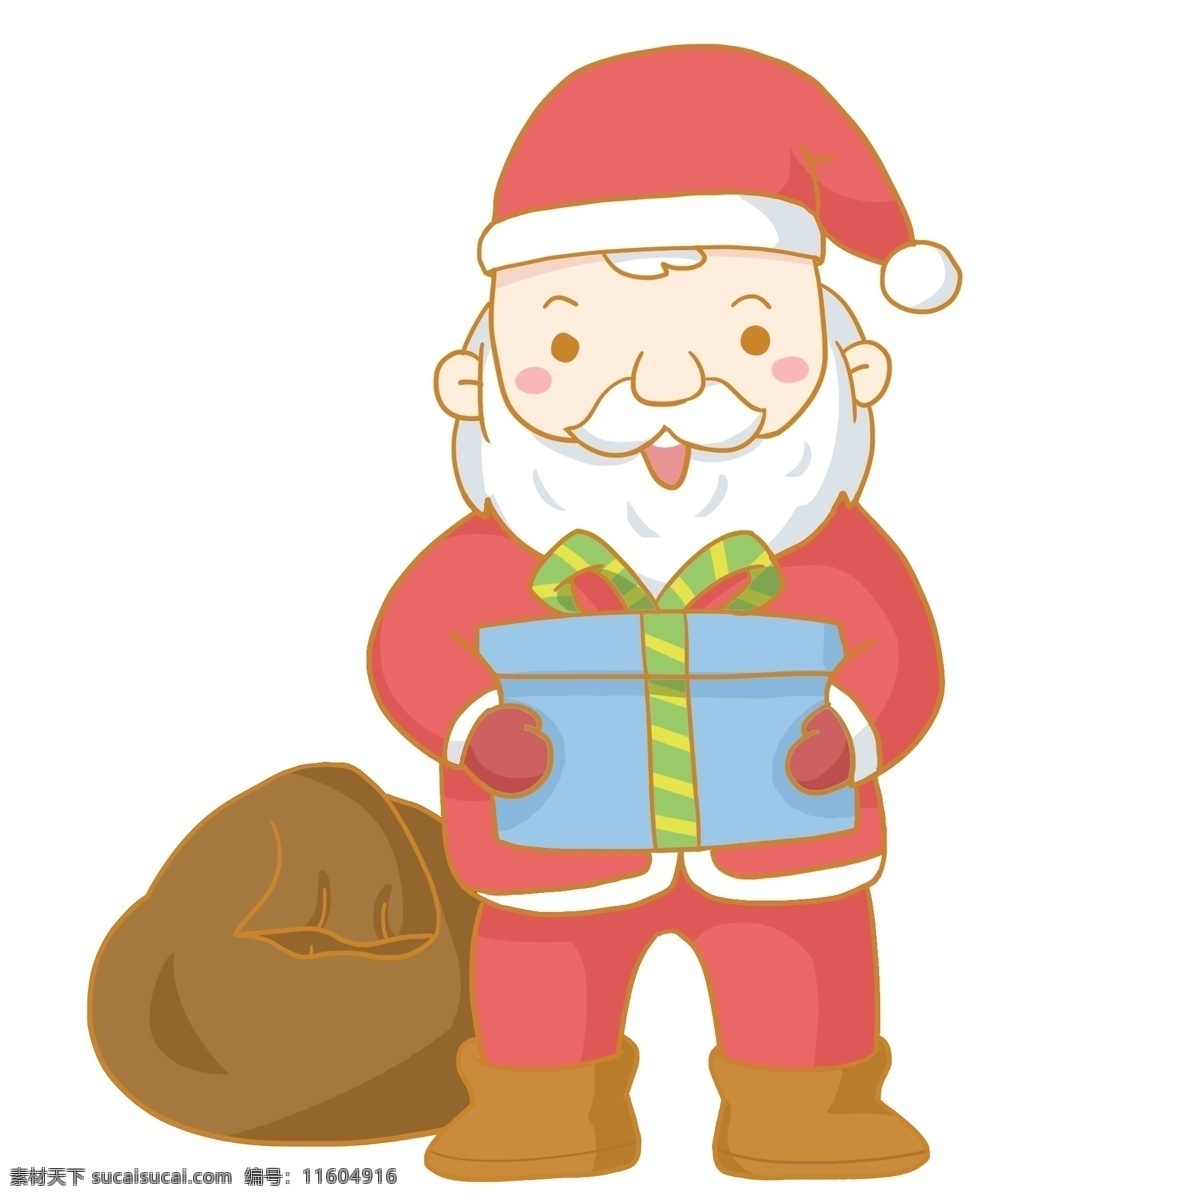 圣诞节 圣诞老人 送礼 物 免 抠 圣诞老爷爷 圣诞老公公 礼盒 礼物 礼品 圣诞帽 红色 大胡子 白胡子 装礼物的袋子